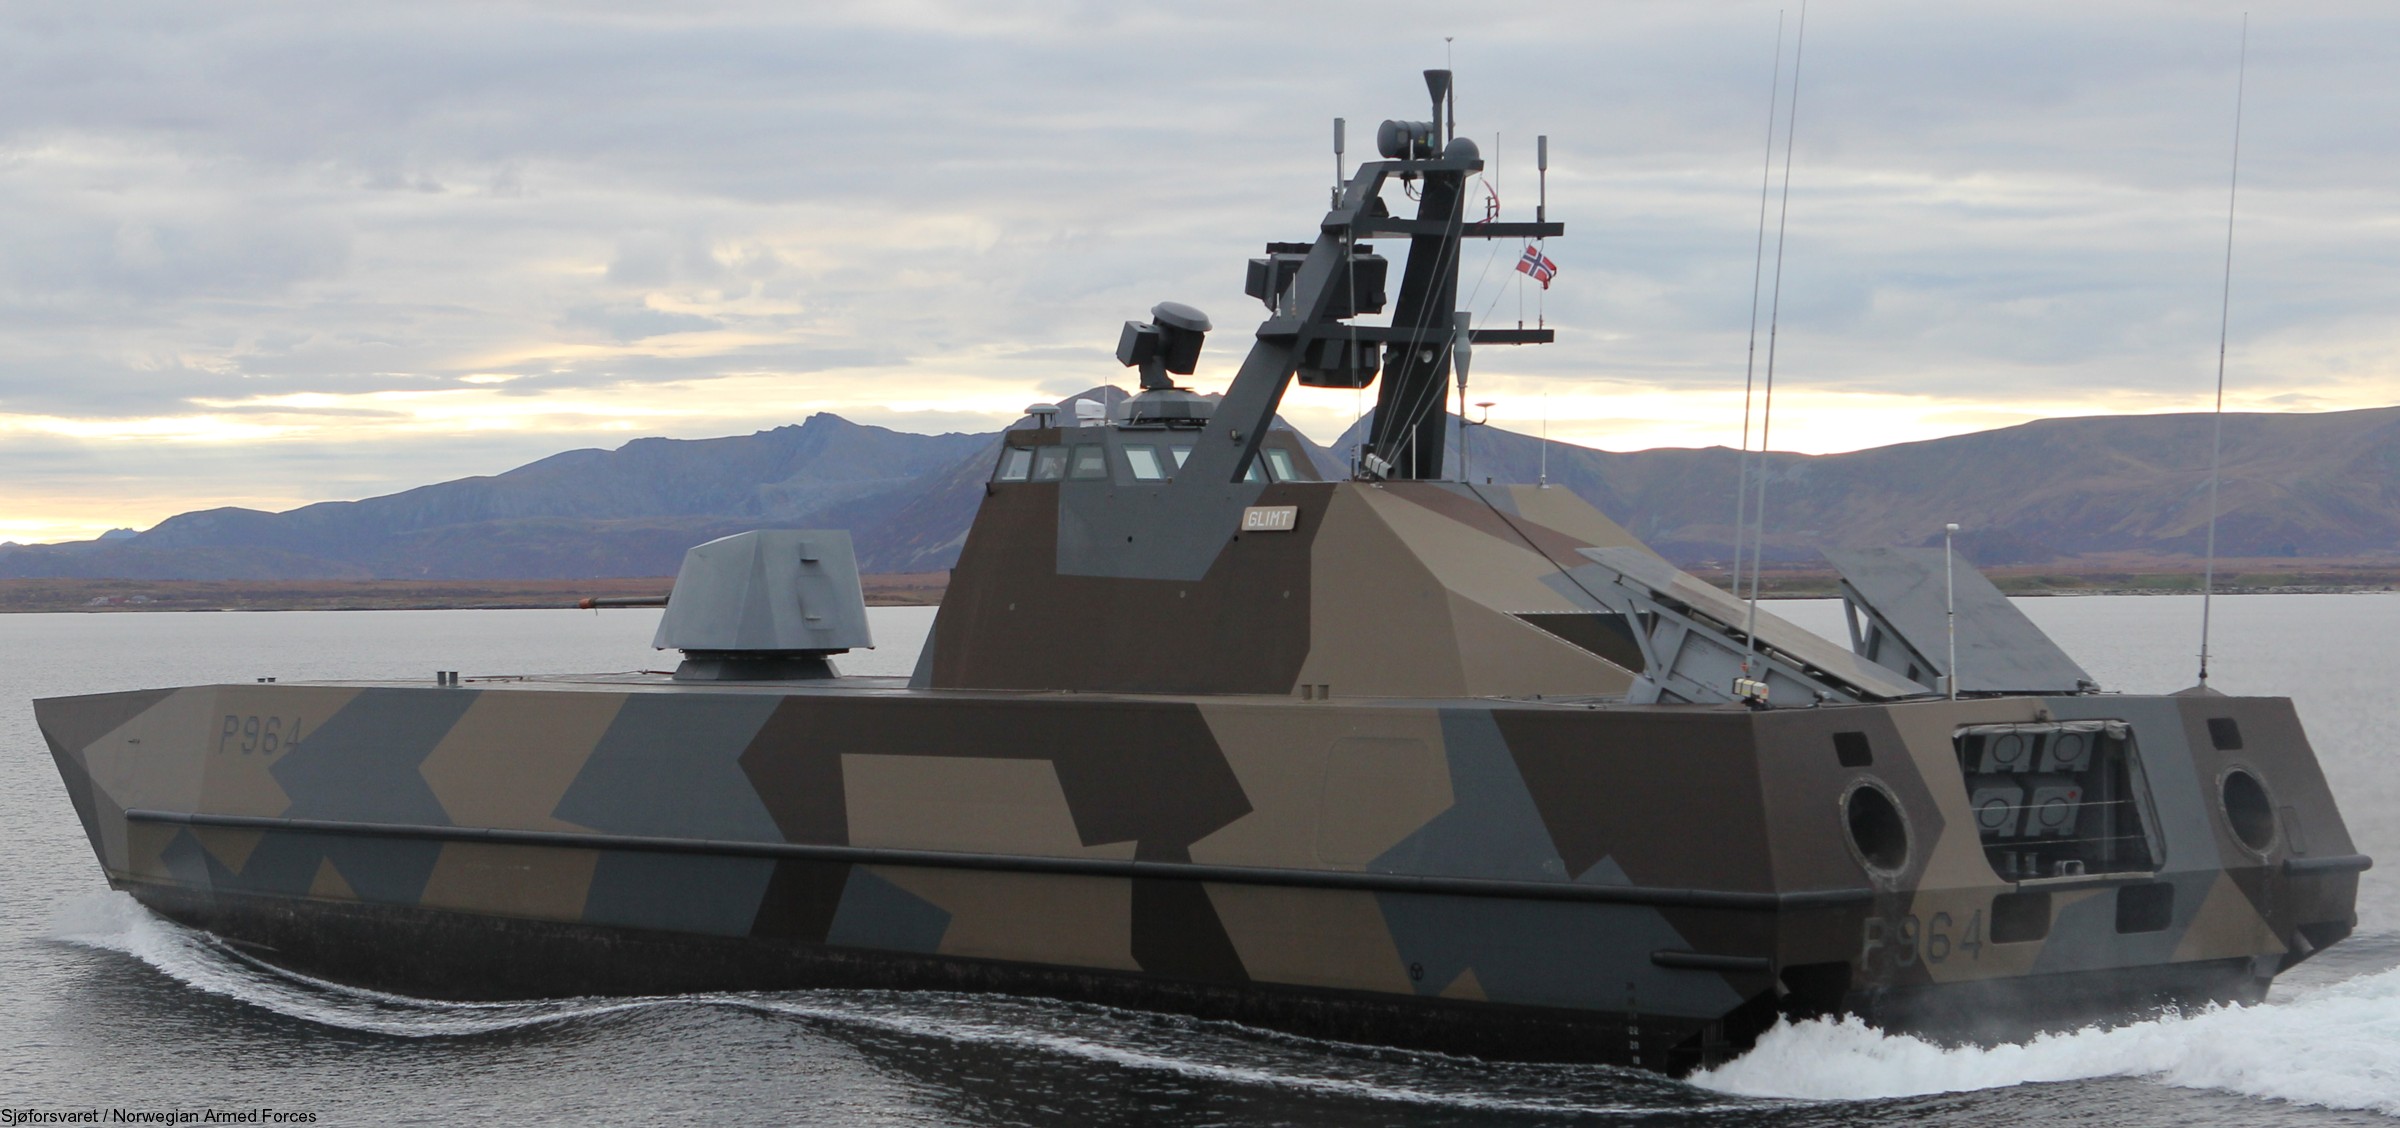 skjold class corvette p-964 hnoms knm glimt royal norwegian navy sjoforsvaret 10c